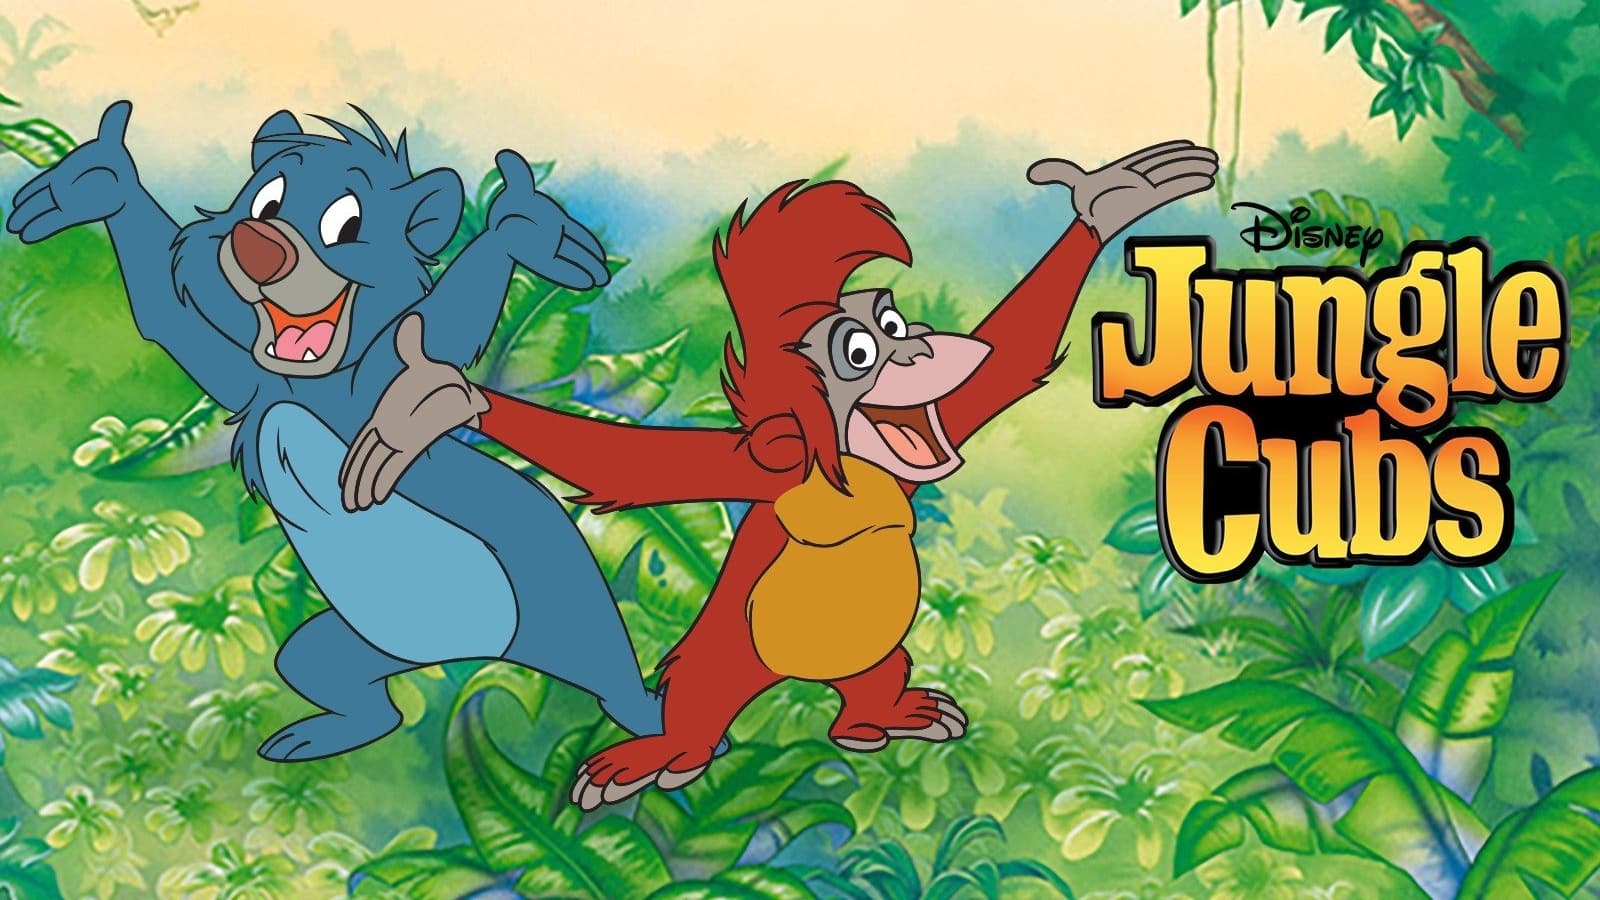 Jungle cubs credits